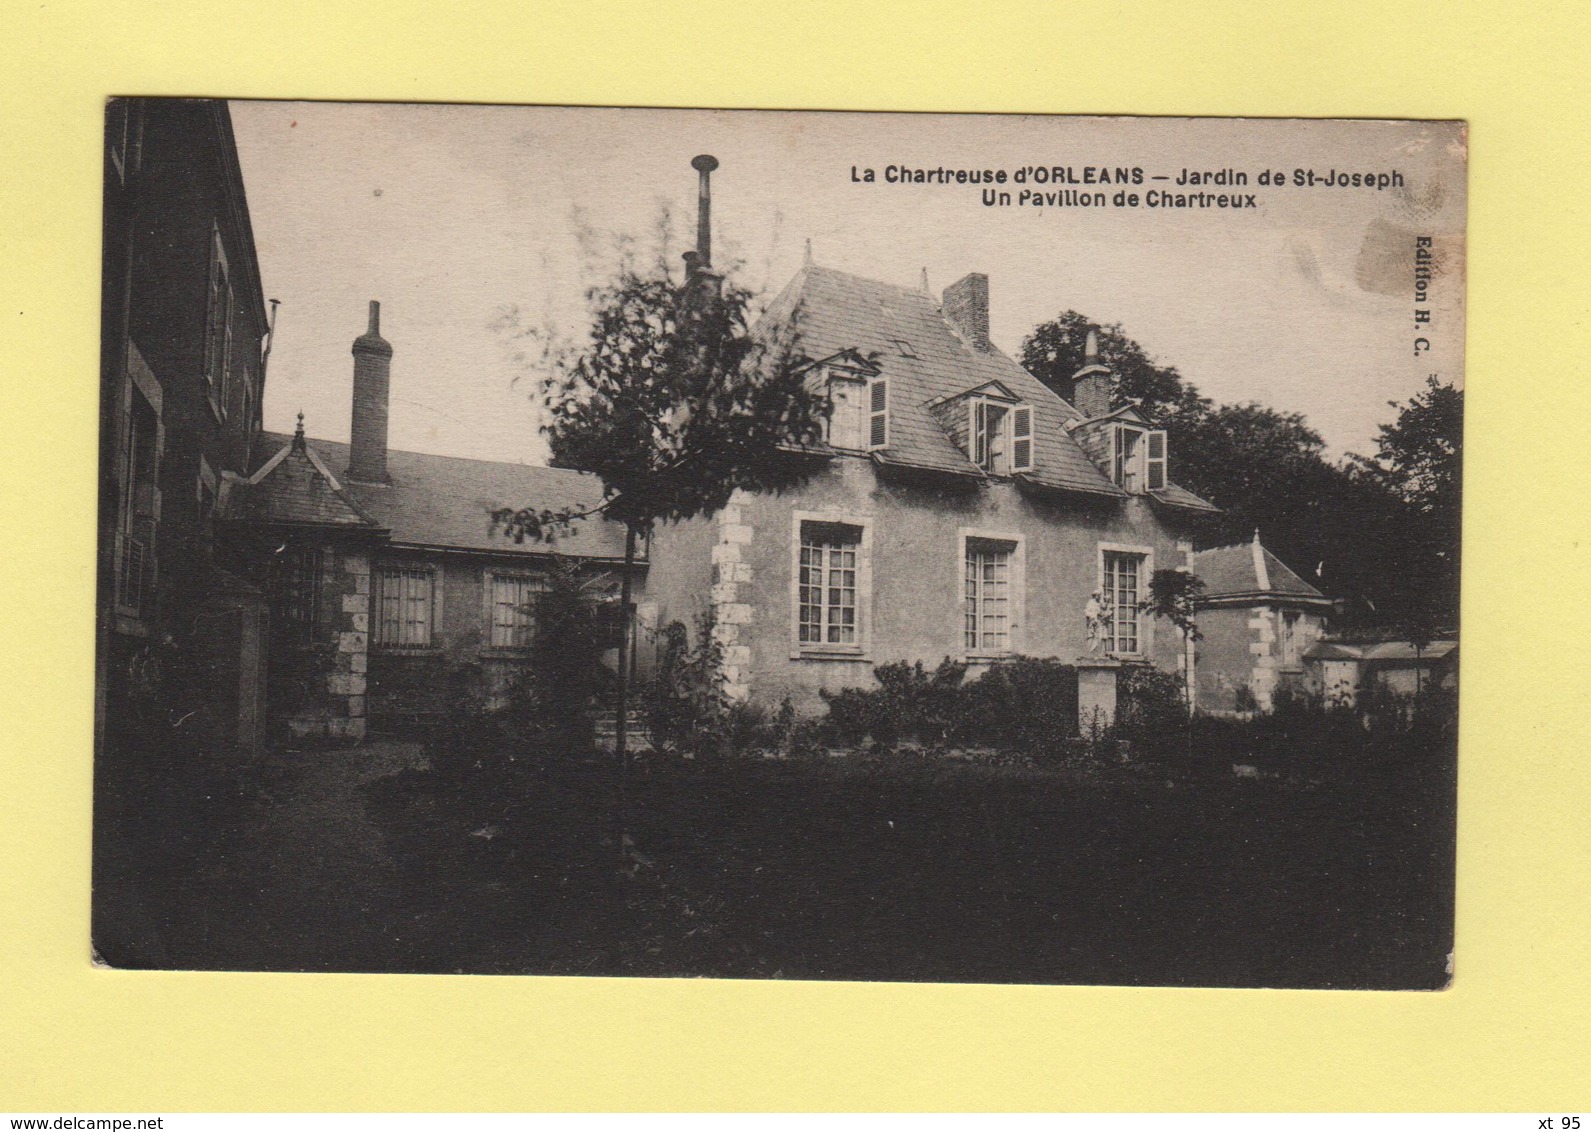 Hopital Auxiliaire N°114 - Orleans Loiret - 8-10-1918 - Croix Rouge Francaise - WW II